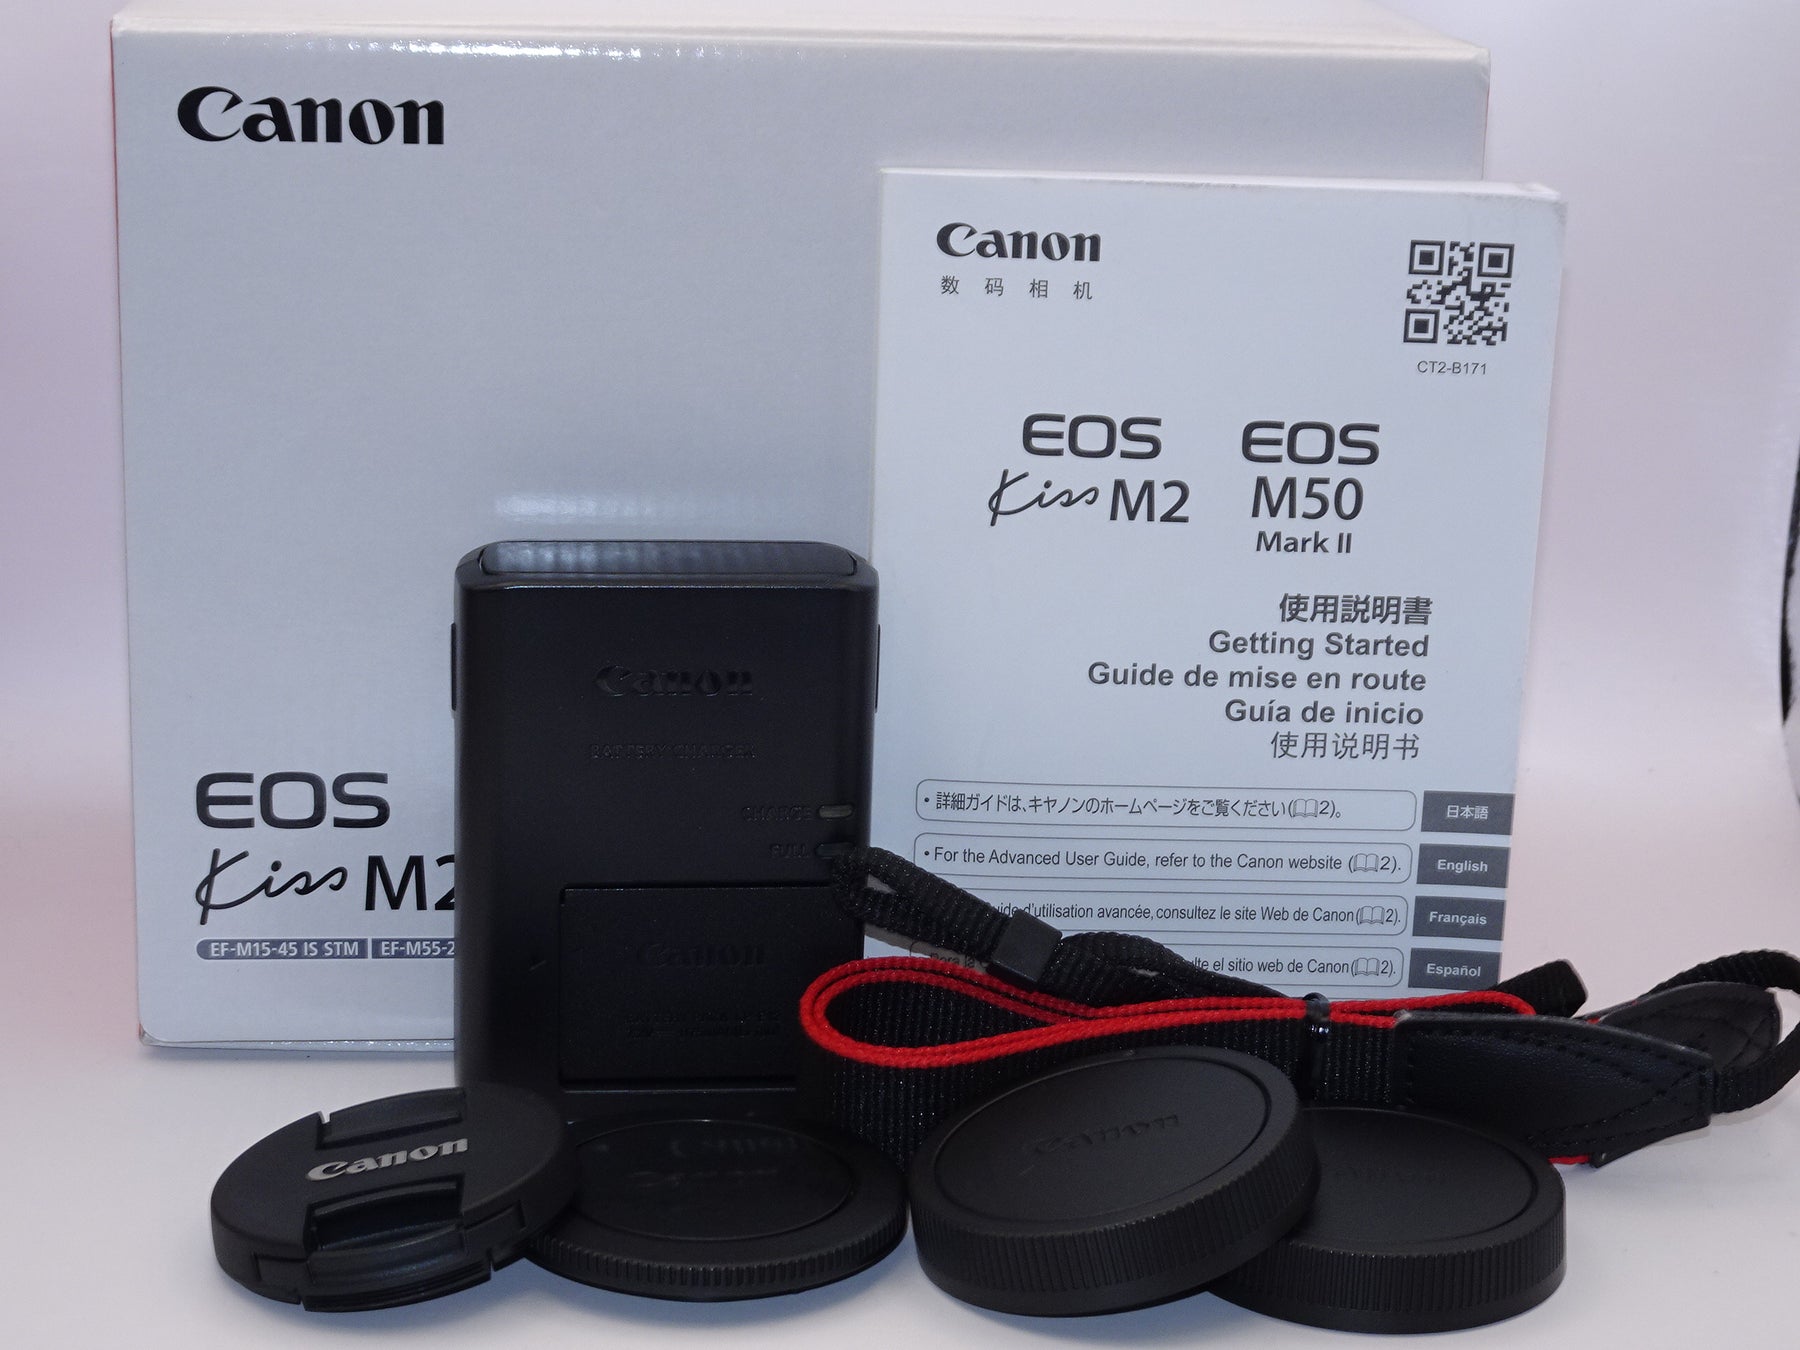 【外観特上級】Canon ミラーレス一眼カメラ EOS Kiss M2 ダブルズームキット ブラック KISSM2BK-WZK